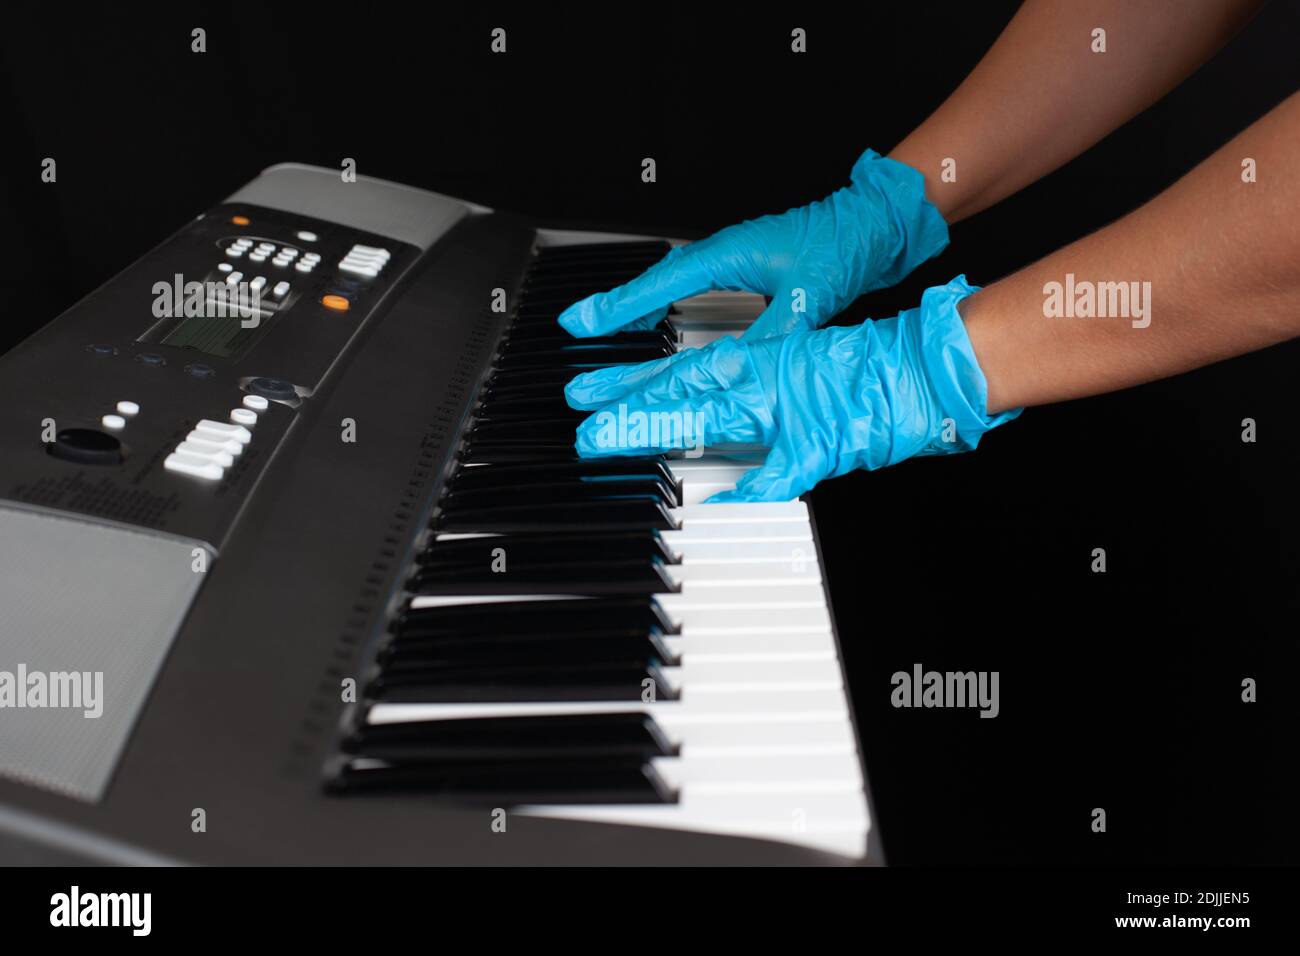 primo piano delle mani femminili in guanti di protezione blu che giocano una melodia sulle chiavi di un sintetizzatore elettronico, un simbolo o un concetto di protezione della salute Foto Stock